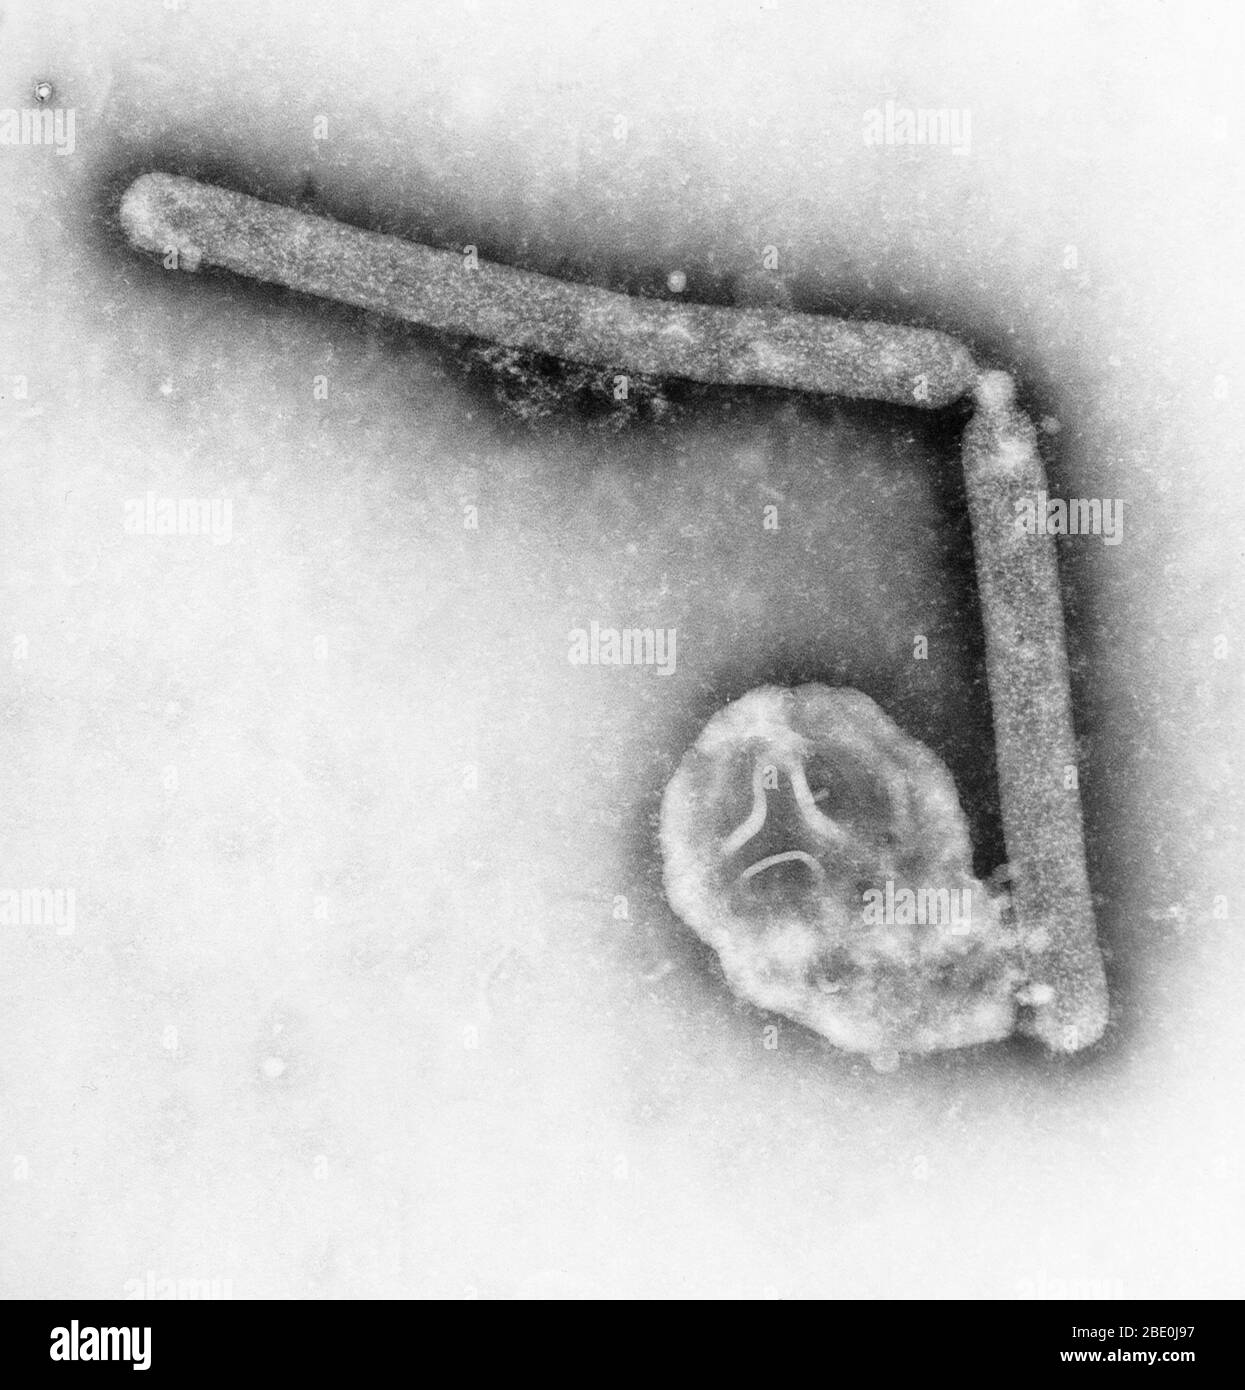 Transmission Electron Micrograph (TEM), der die ultrastrukturellen Details zweier Virionen der Vogelgrippe A (H5N1) aufdeckt, einer Art Vogelgrippe-Virus, das eine Subart der Vogelgrippe A ist.bei dieser Vergrößerung kann man das gestickte Aussehen der angerauten Oberfläche der proteinhaltigen Schicht, die jedes Virion umhüllte, bemerken. Obwohl dieses Virus normalerweise nicht den Menschen infizieren kann, wurde 1997 die erste Instanz einer direkten Verbreitung des GRIPPEVIRUS A (H5N1) durch Vögel bei einem Ausbruch der Vogelgrippe bei Geflügel in Hongkong dokumentiert. Das Virus verursachte schwere Atemwegserkrankungen bei 18 Menschen, o Stockfoto